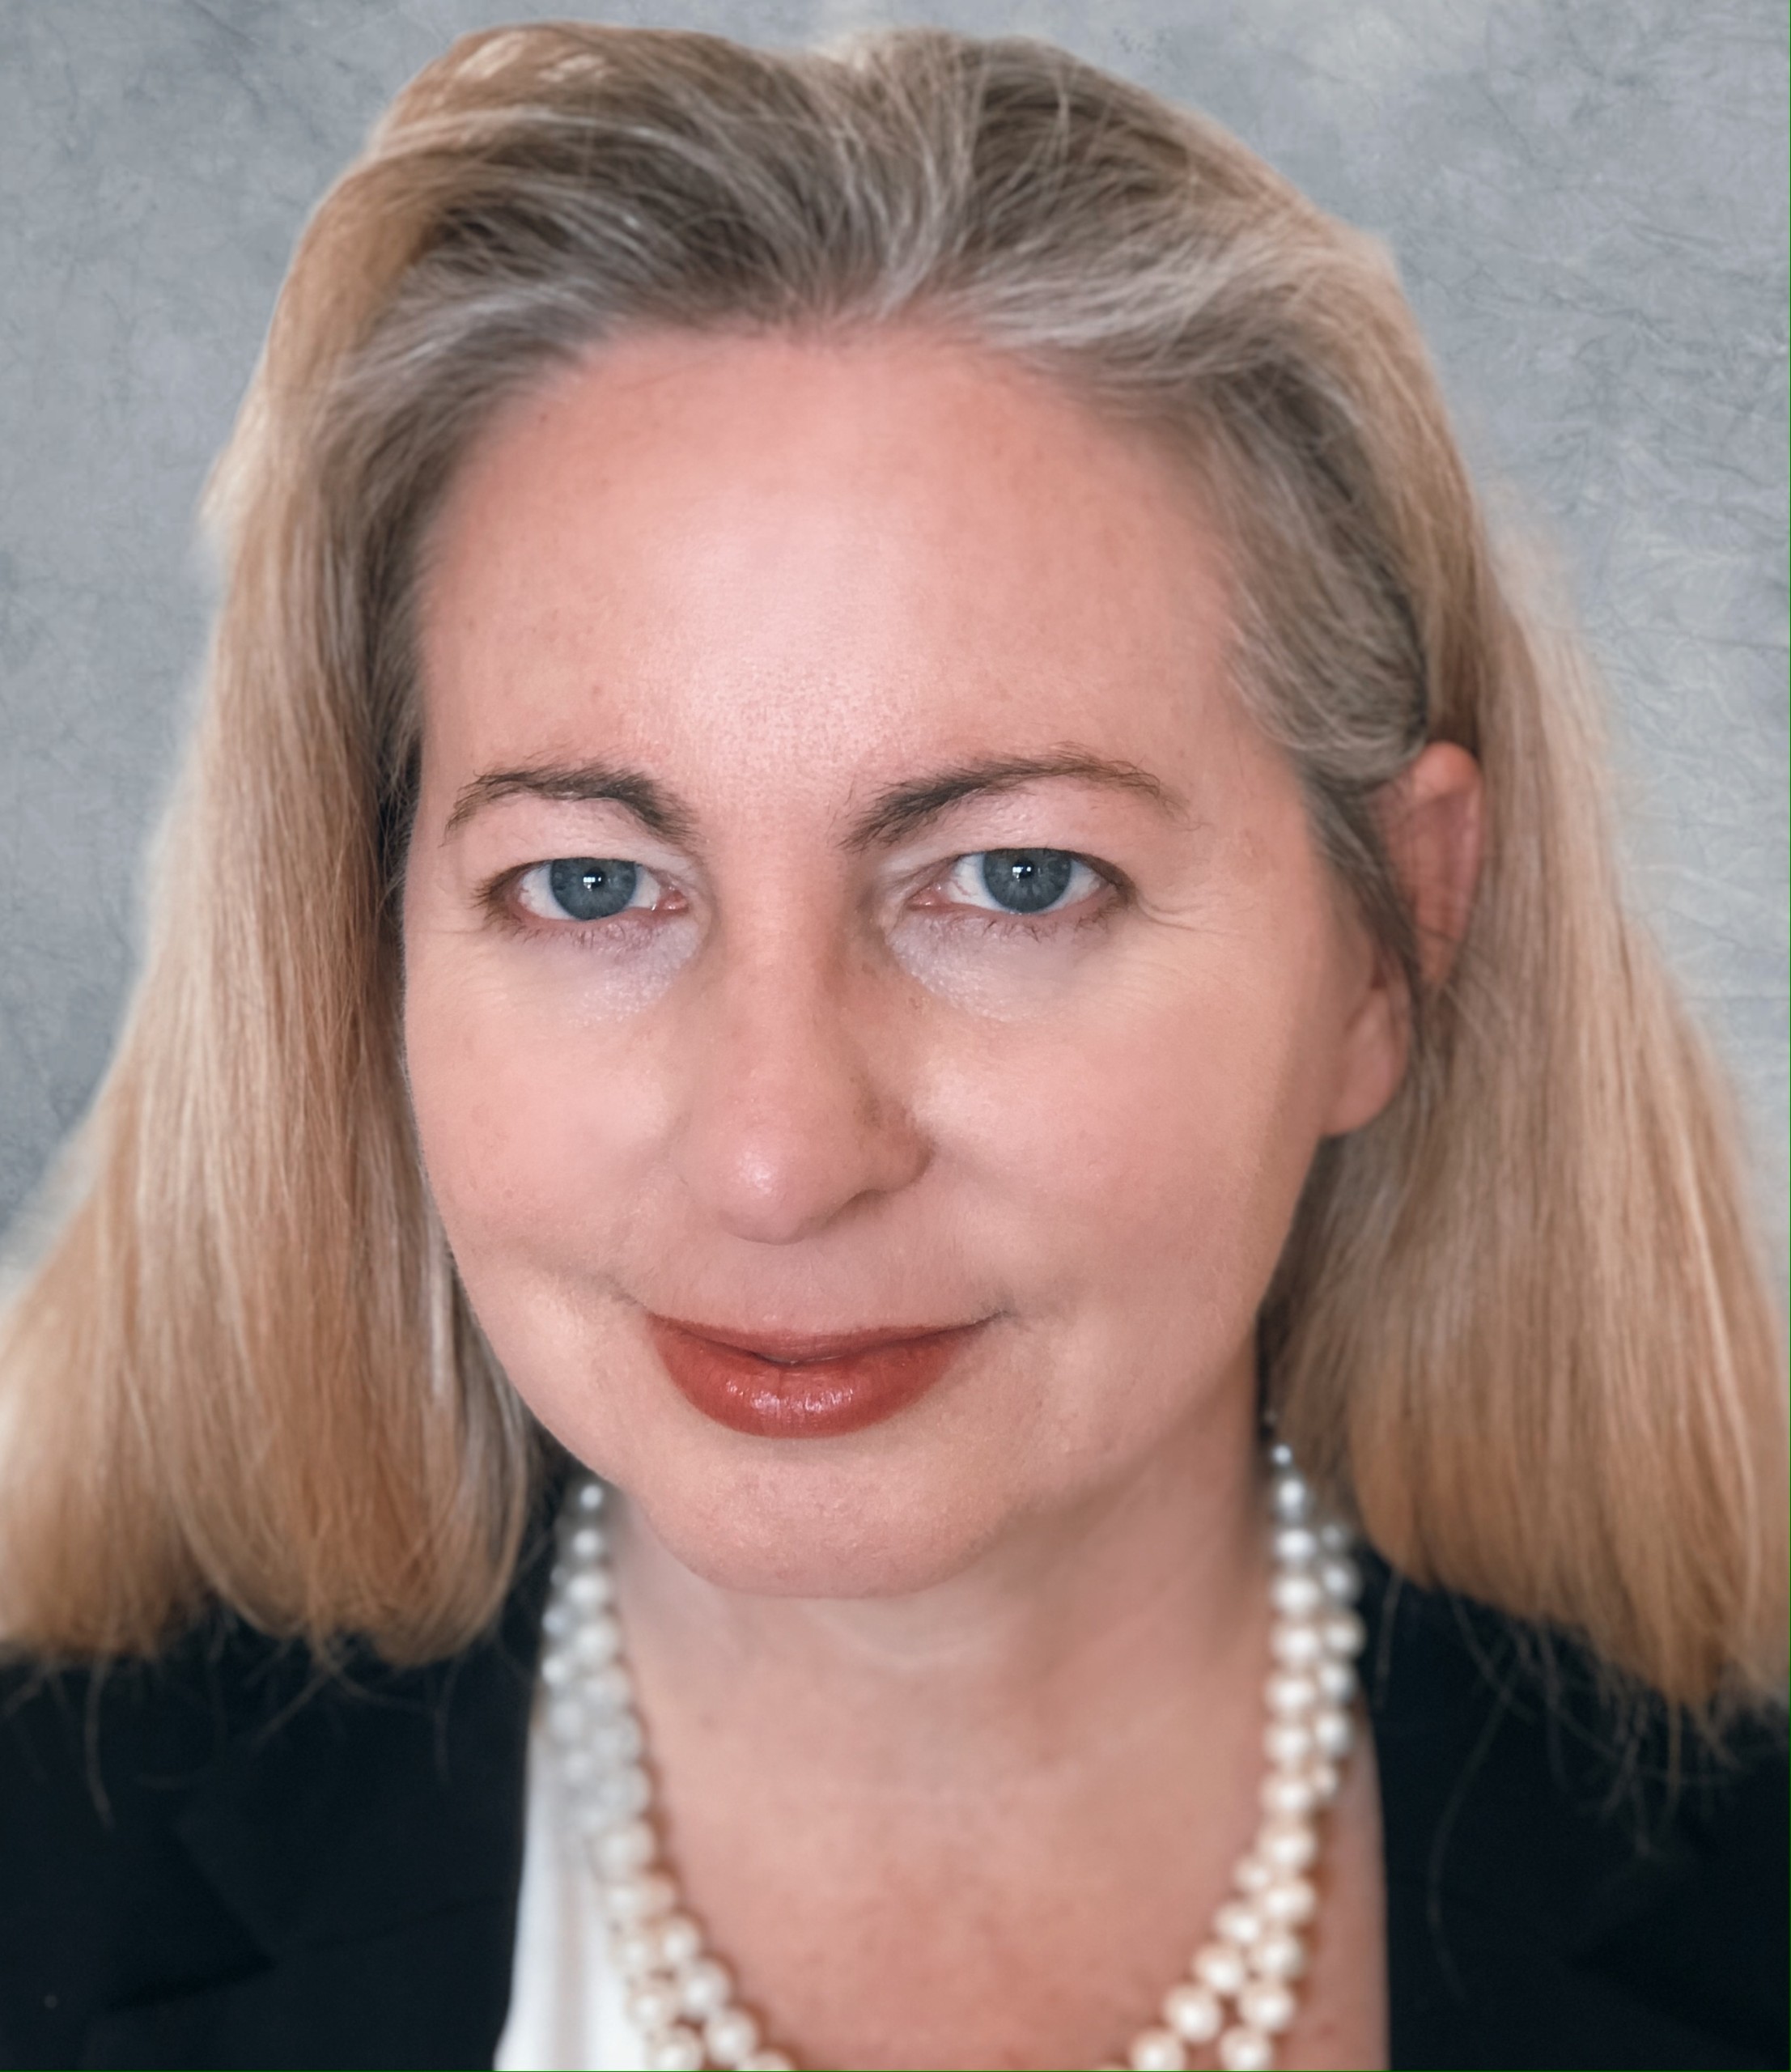 Dr. Sharon Hesterlee